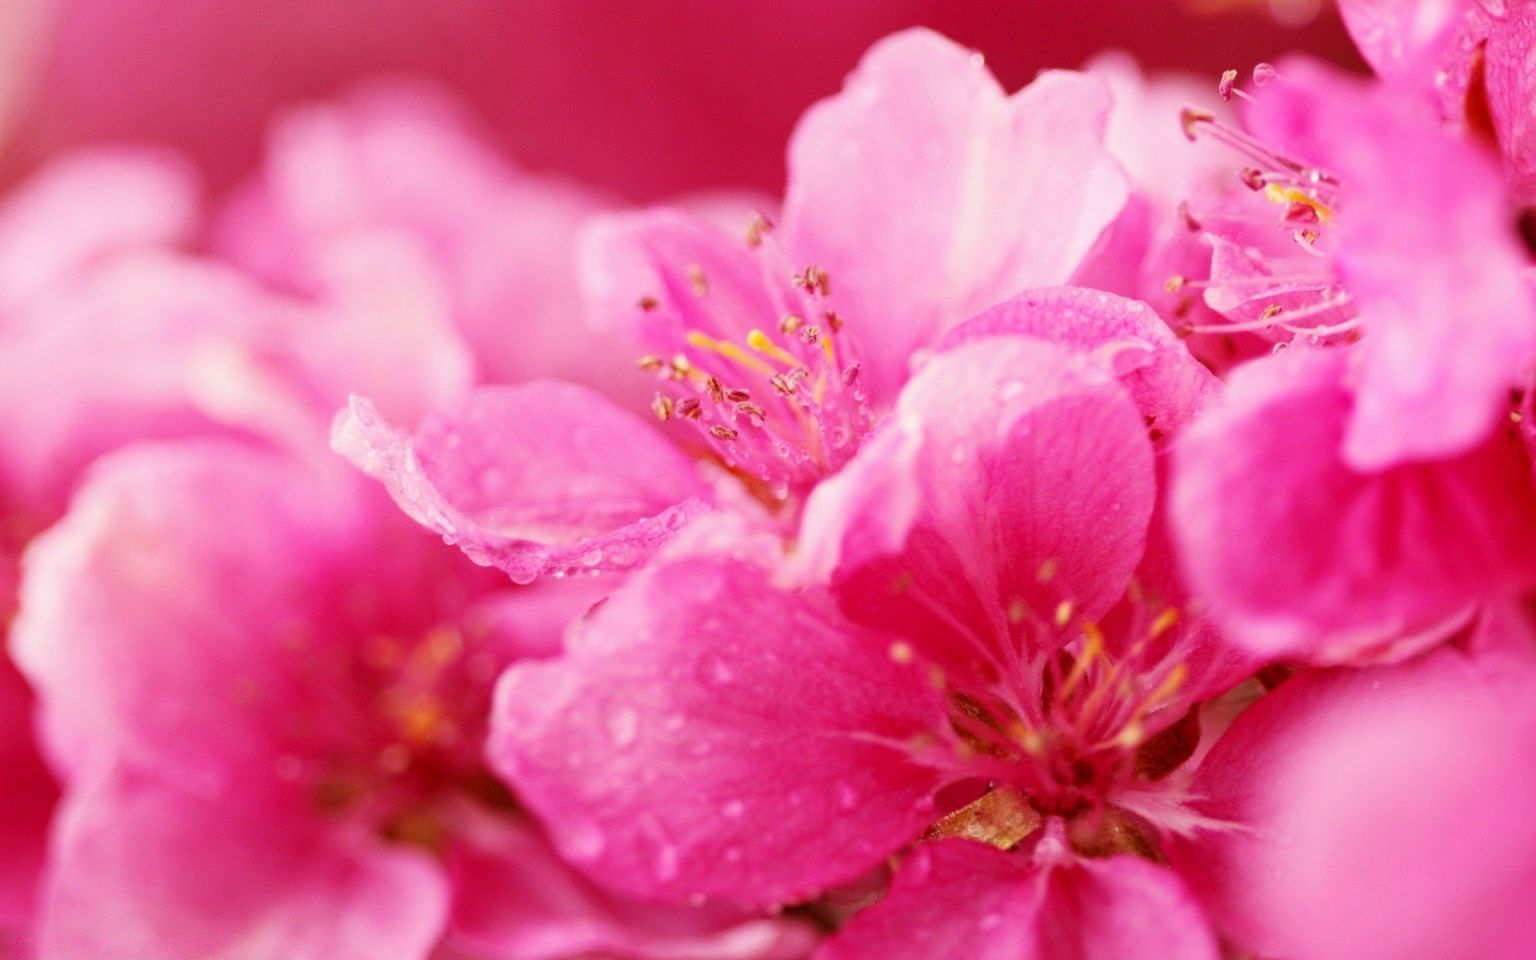 Розовые весенние цветы